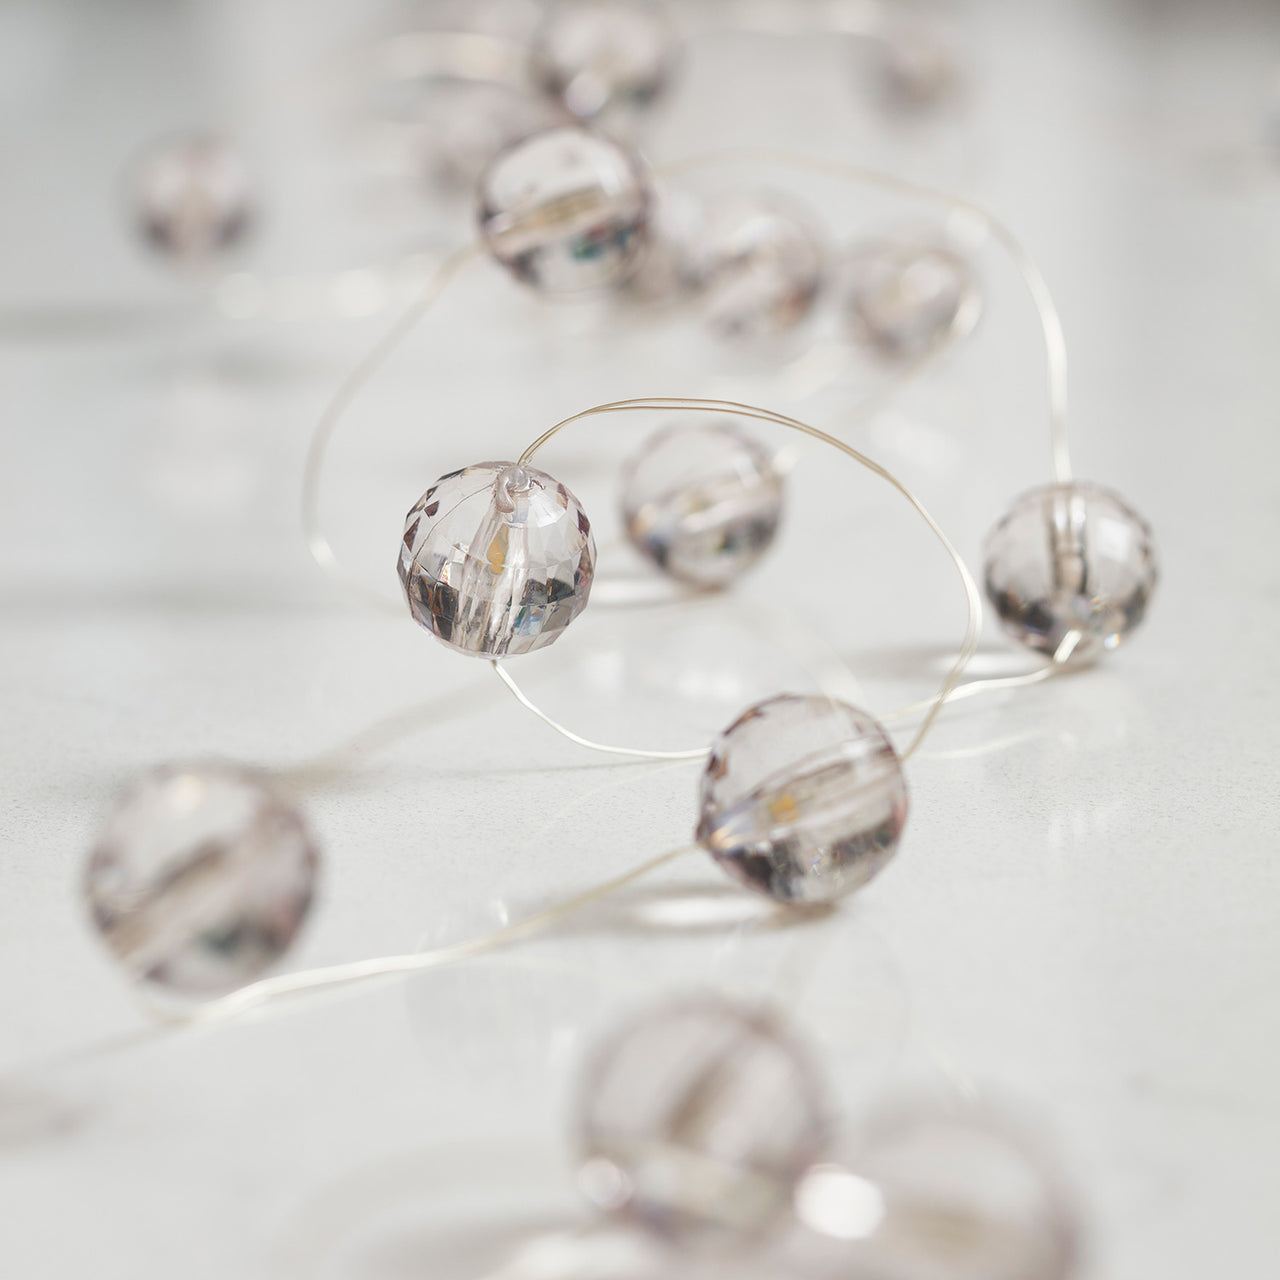 20er Micro Lichterkette Perlen warmweiß